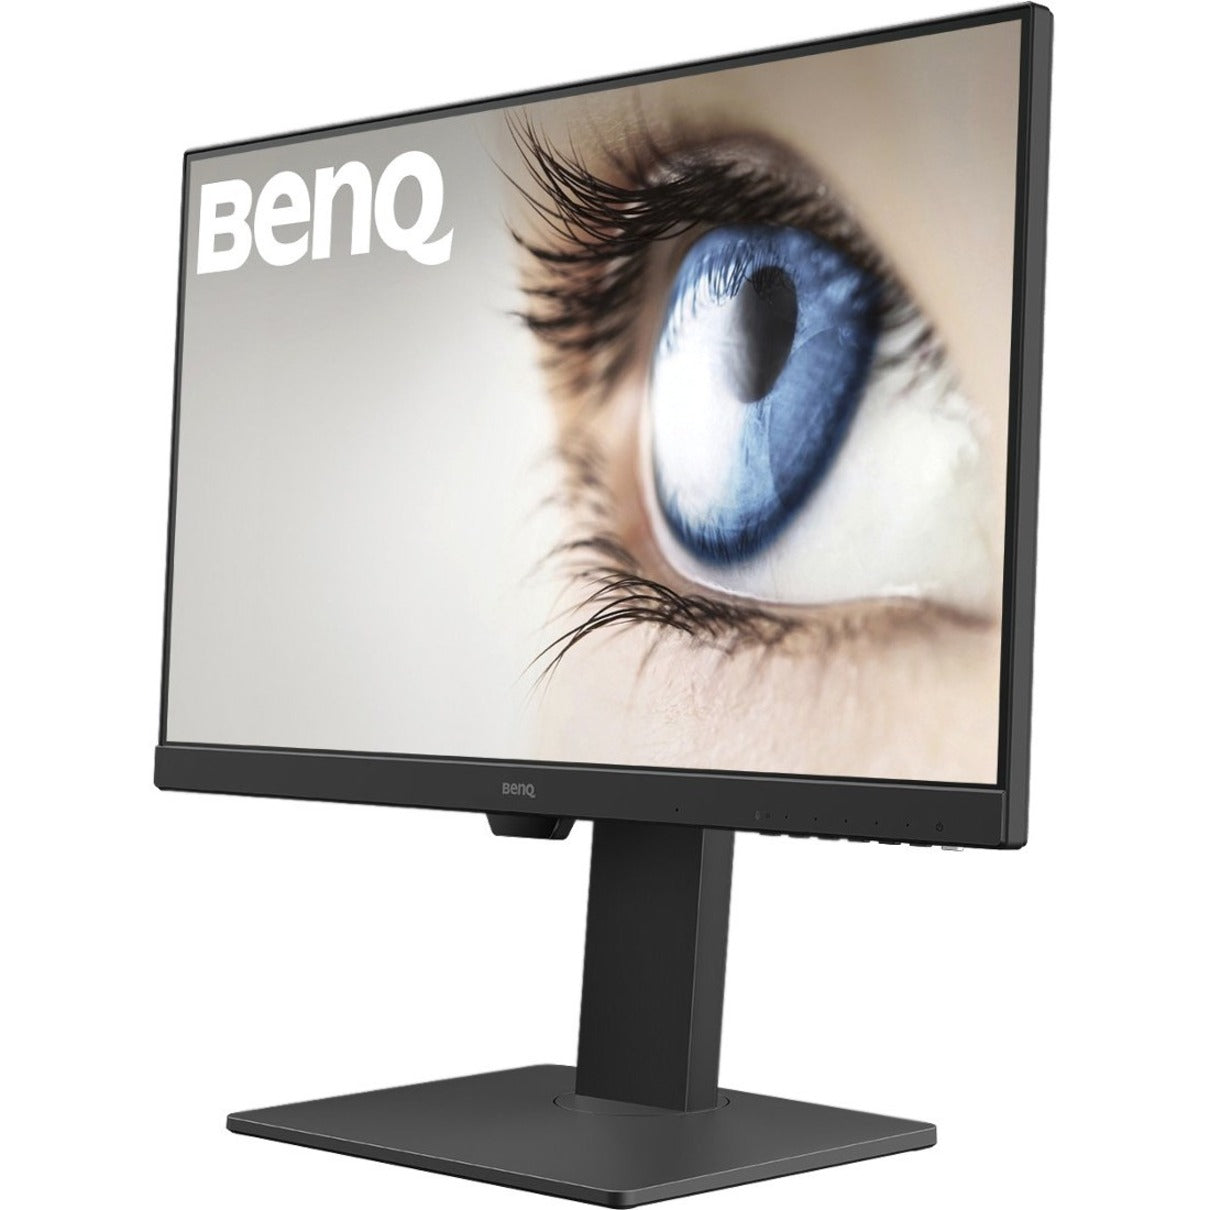 BenQ GW2785TC 27 Full HD LCD Monitor, Black - Built-in Speakers, USB/HDMI/DisplayPort Connectivity